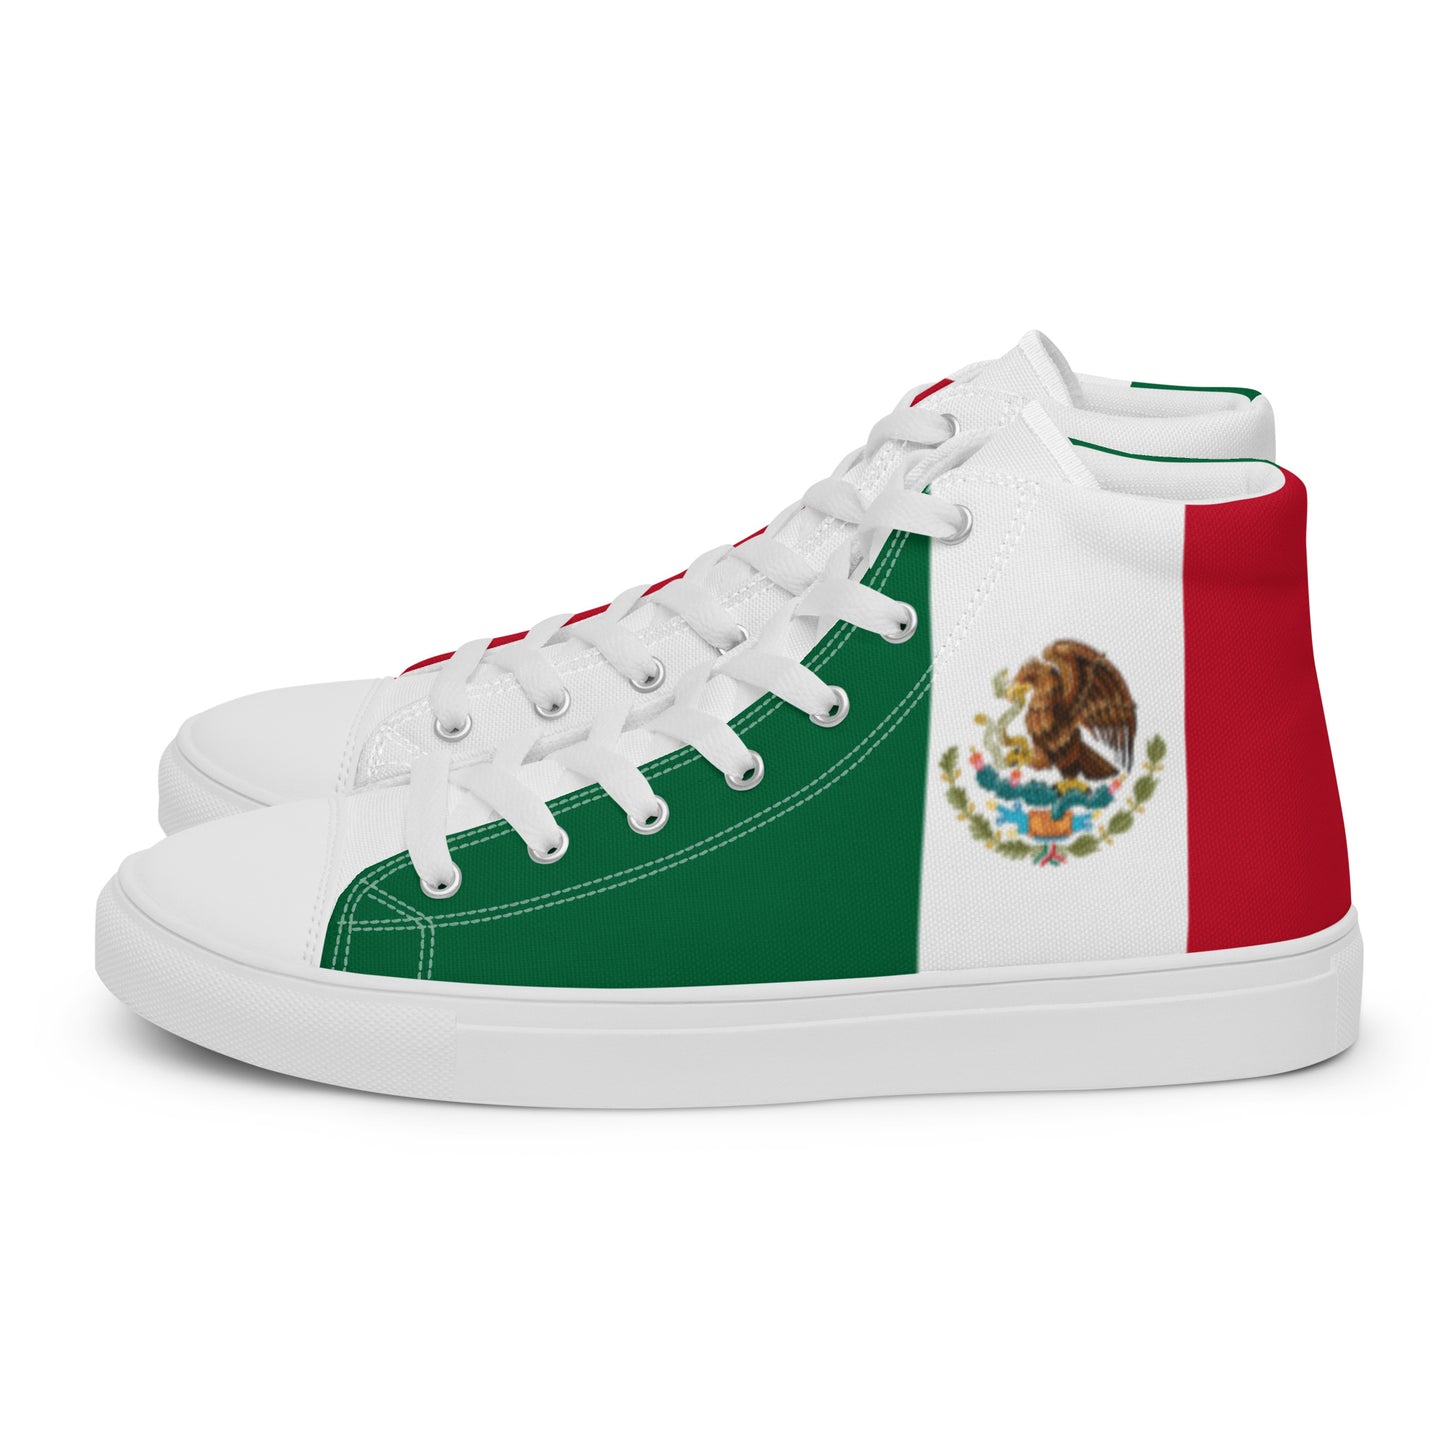 México - Women - Bandera - High top shoes